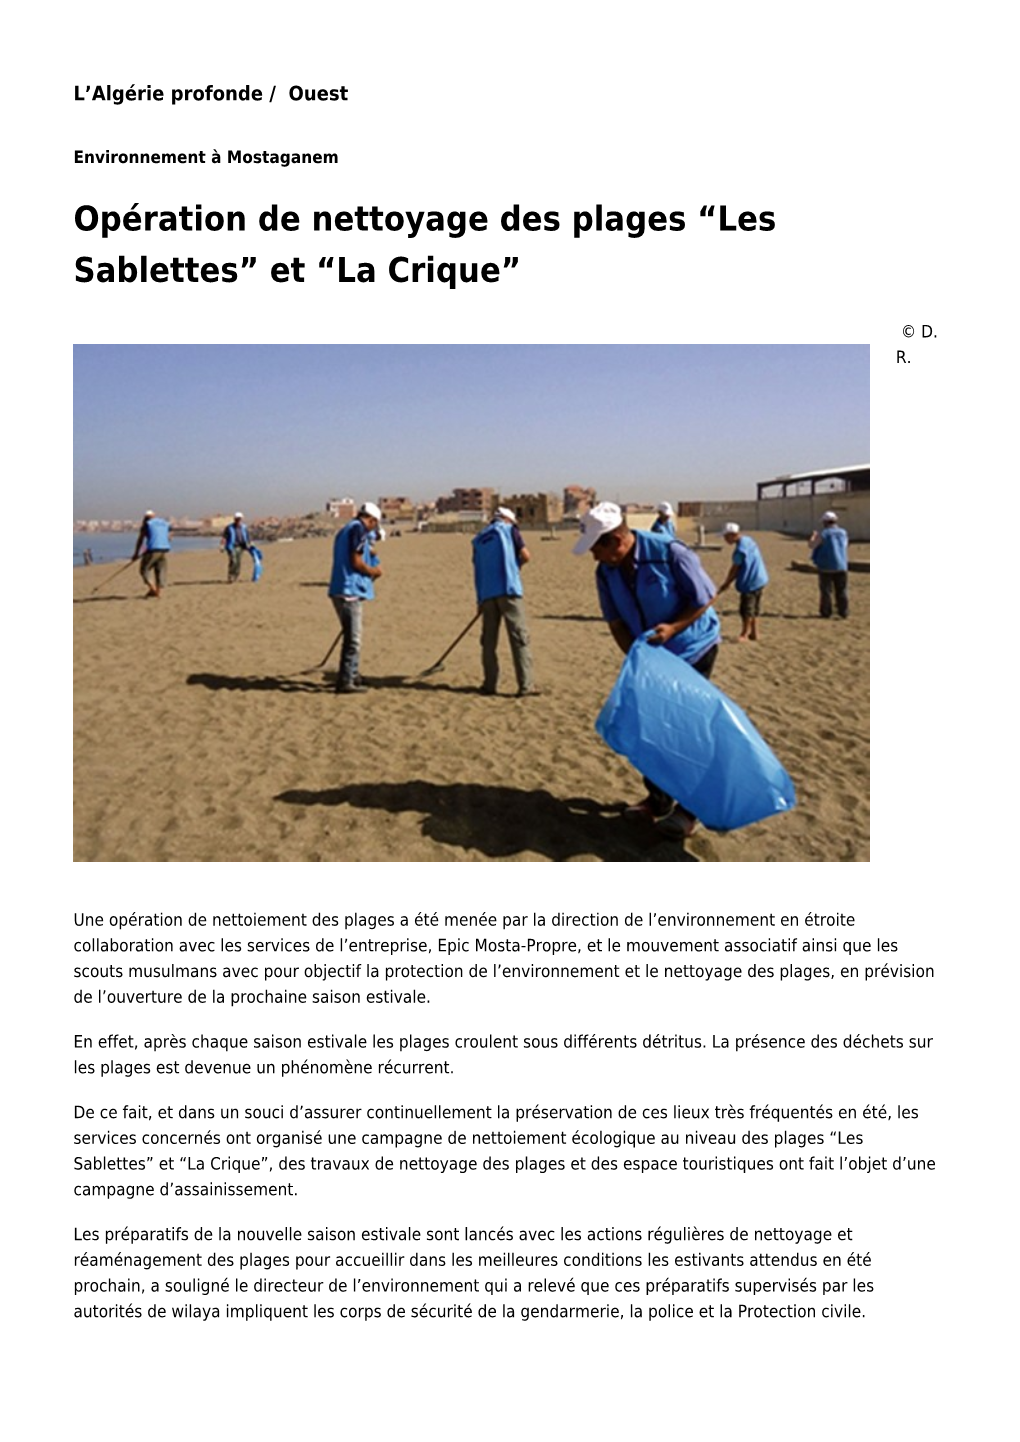 Opération De Nettoyage Des Plages “Les Sablettes” Et “La Crique”